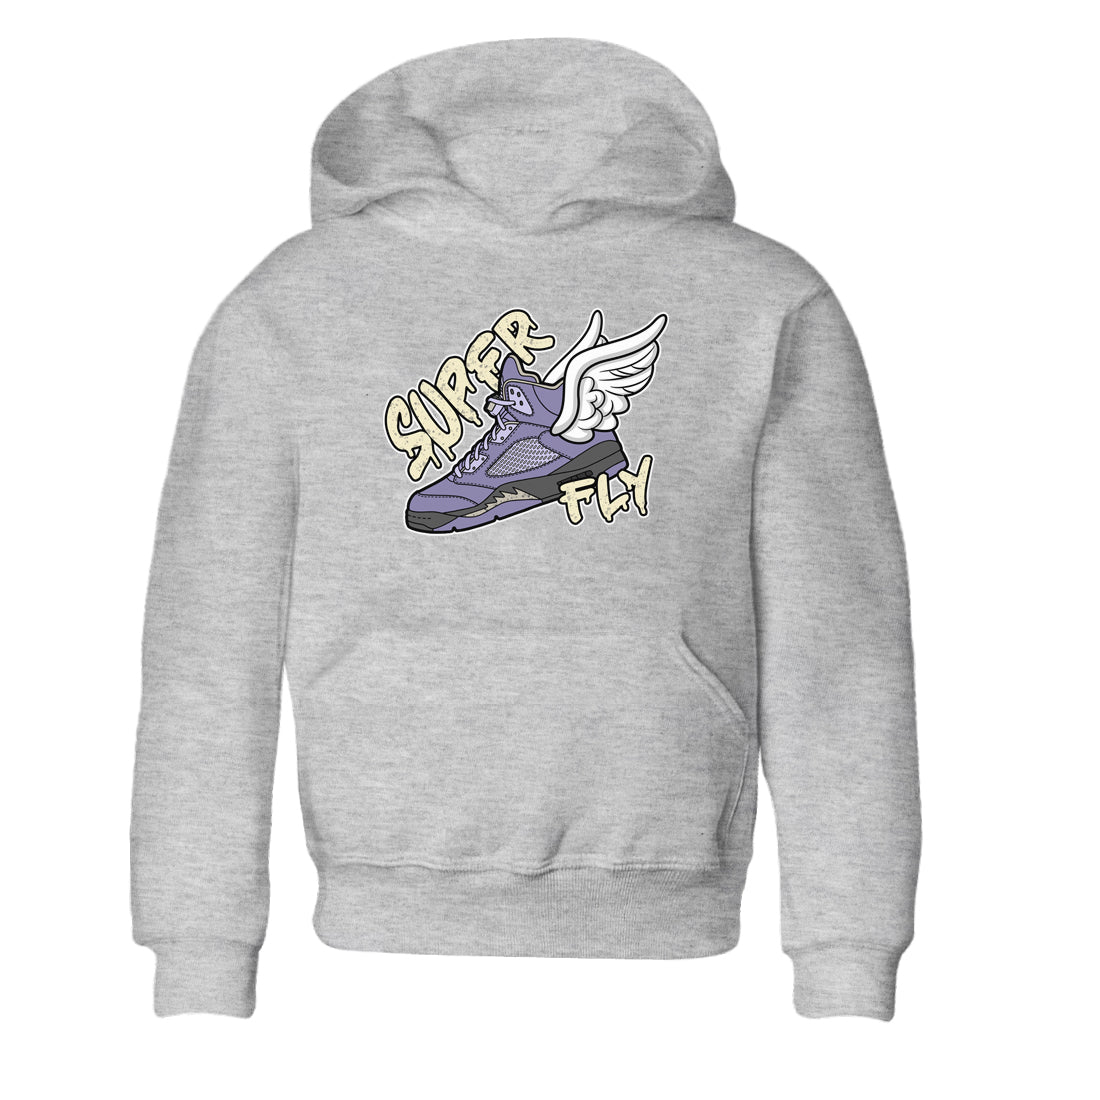 Air Jordan 5 Indigo Haze Sneaker Match Tees Super Fly Sneaker Tees AJ5 Indigo Haze Sneaker Release Tees Kids Shirts Heather Grey 2